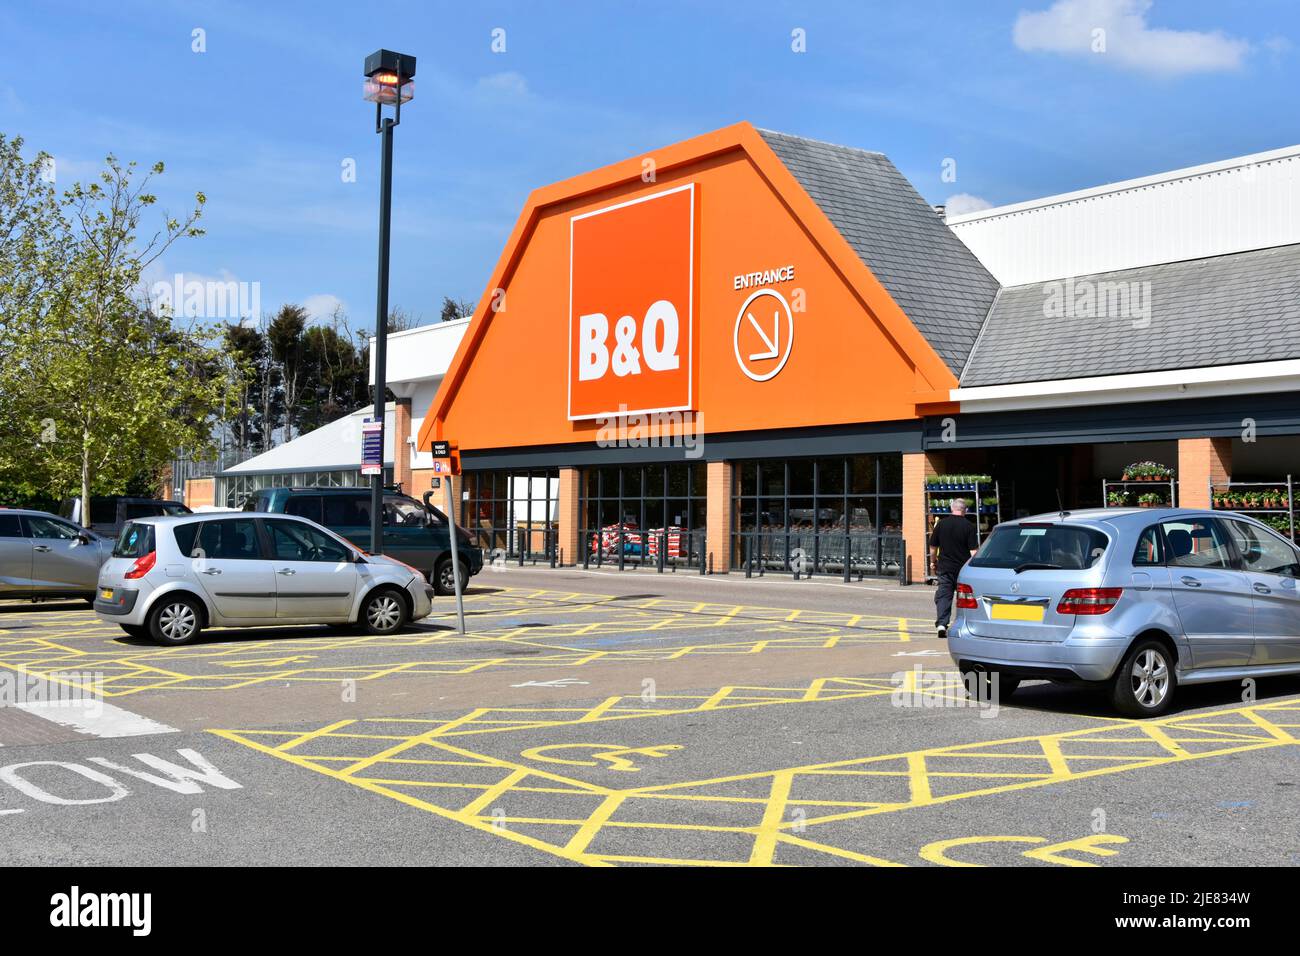 Aires de stationnement pour personnes handicapées peinture jaune identifiant les espaces réservés aux personnes handicapées dans les voitures chez B&Q Retail DIY & Trade business clients Angleterre Royaume-Uni Banque D'Images